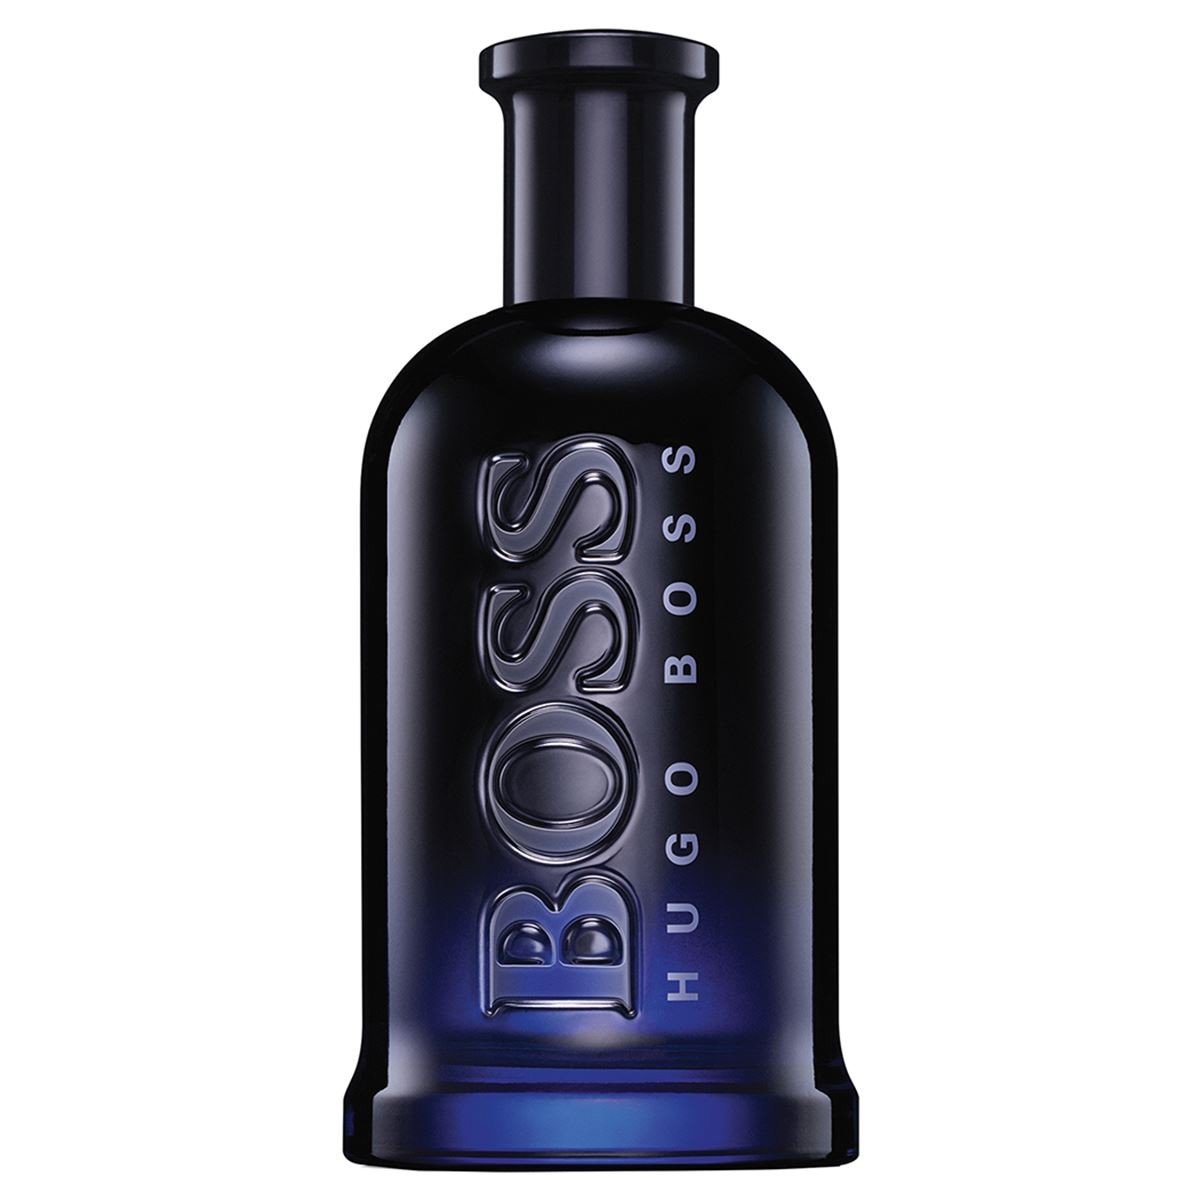 Boss Bottled Night 100ML EDT Hombre Hugo Boss